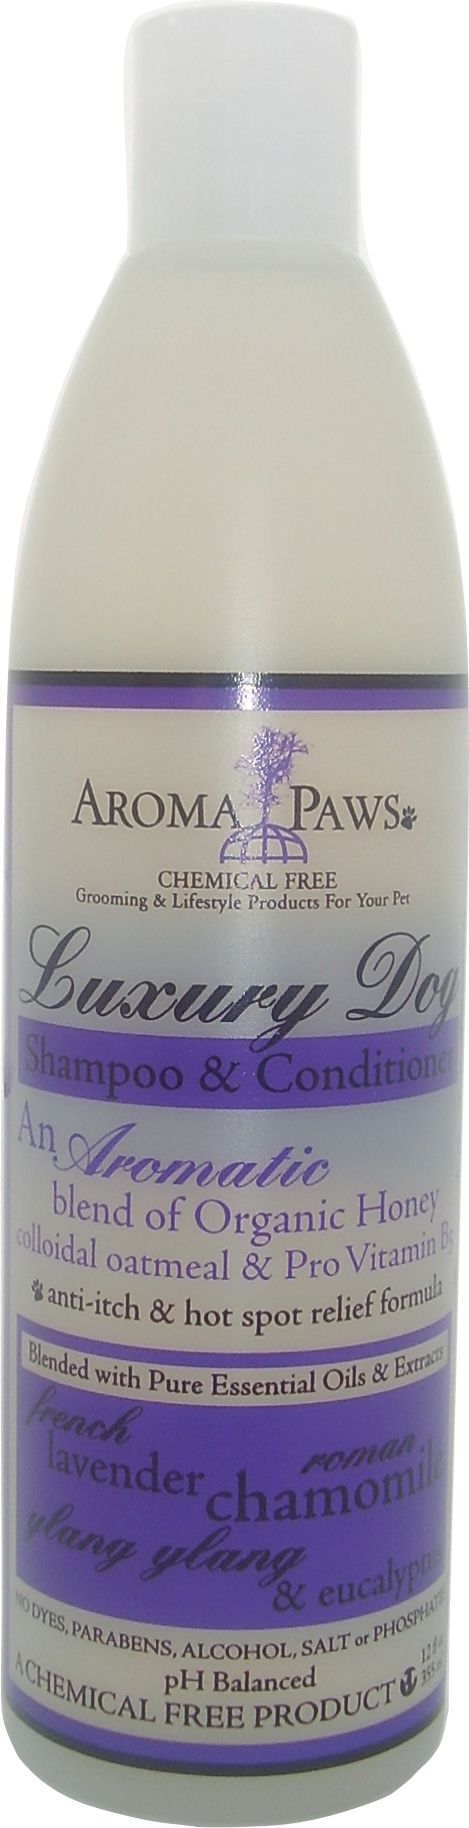 Lavender Chamomile Shampoo & Conditioner